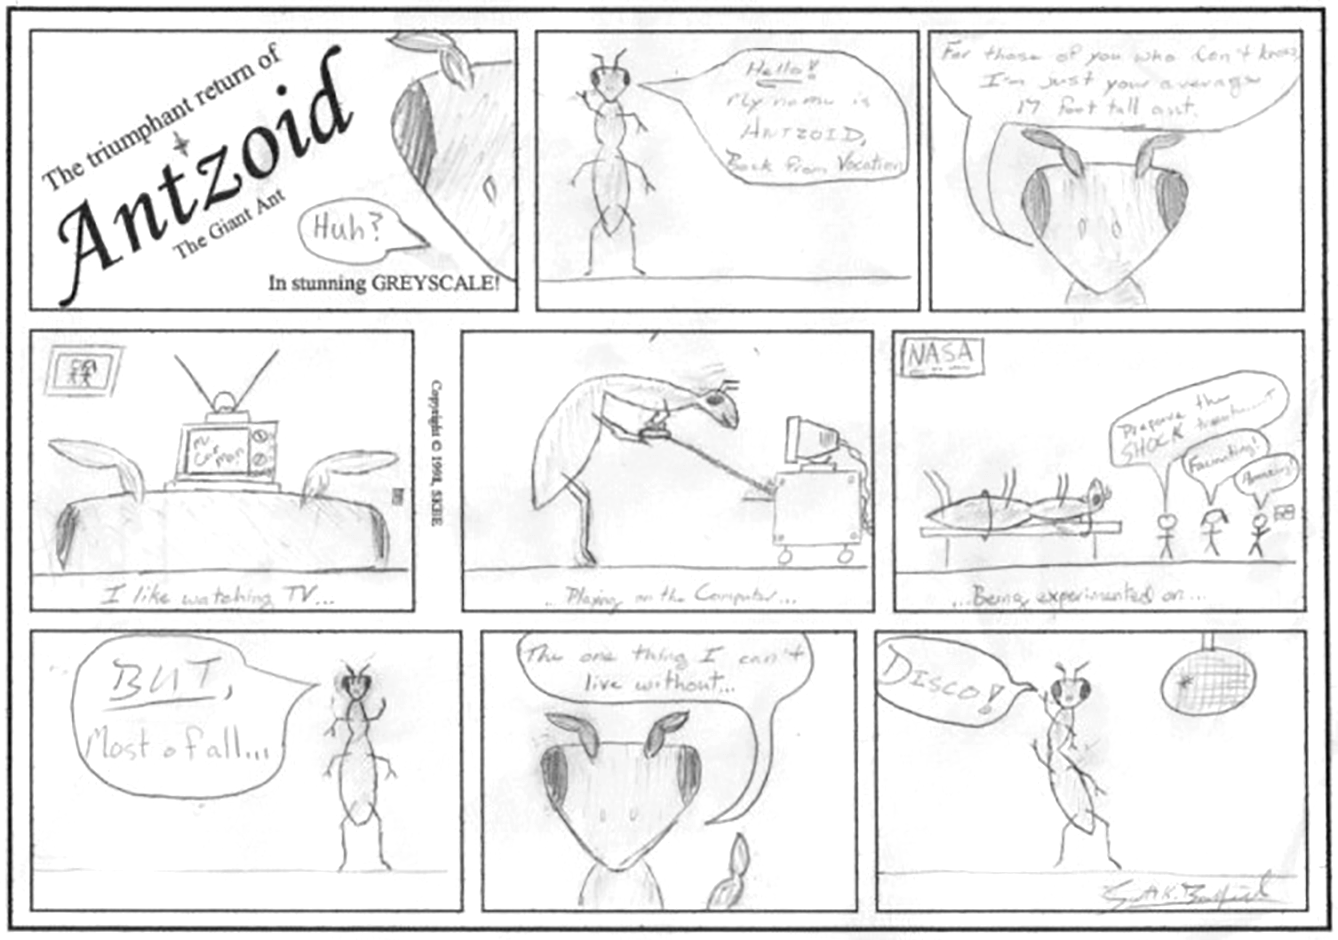 Antzoid Comic